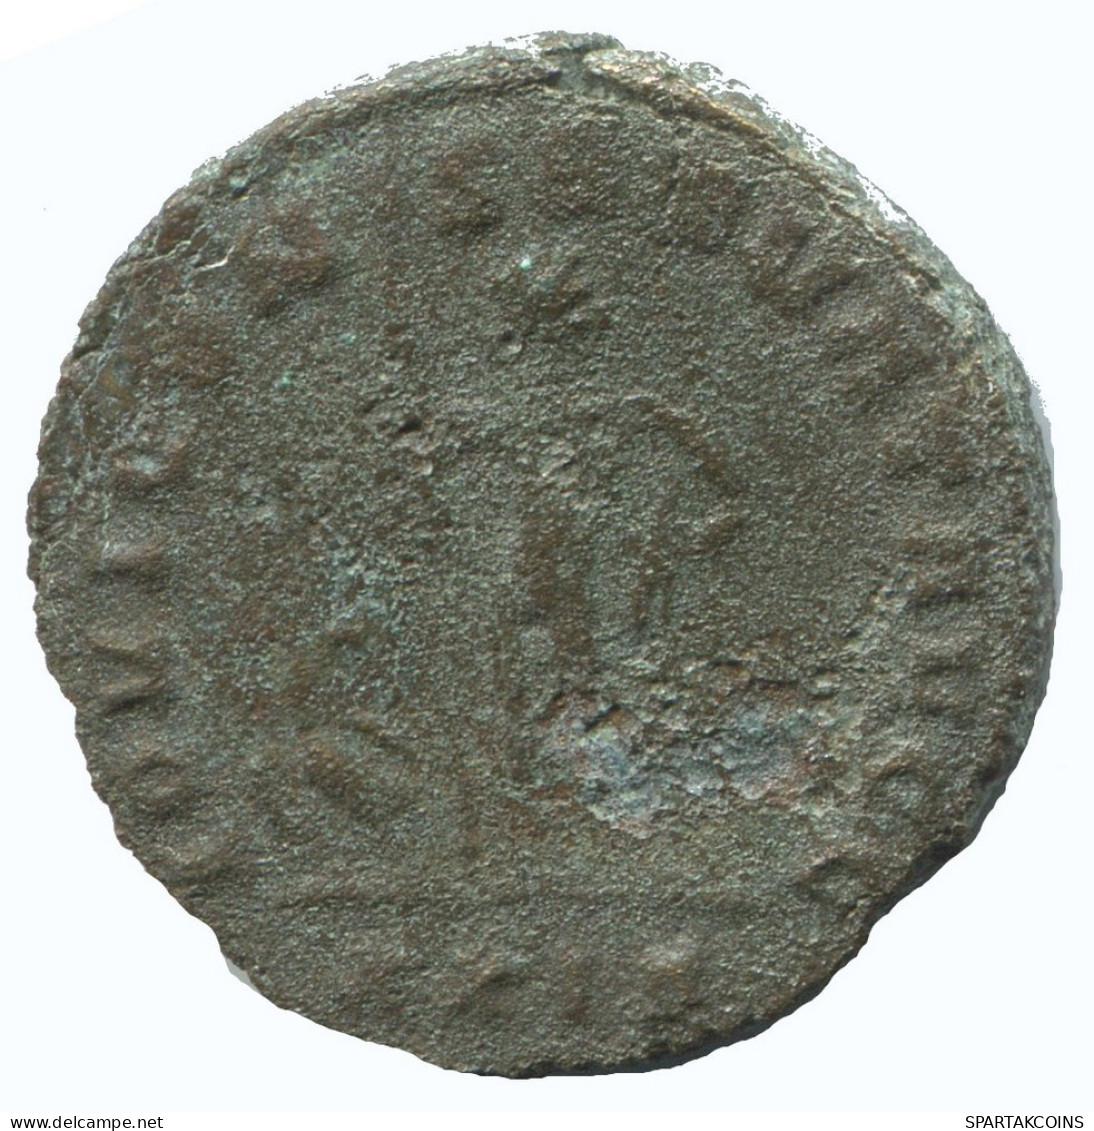 MAXIMIANUS ANTONINIANUS Roma Xxia Ioviconserv 3.7g/21mm #NNN1801.18.F.A - The Tetrarchy (284 AD To 307 AD)